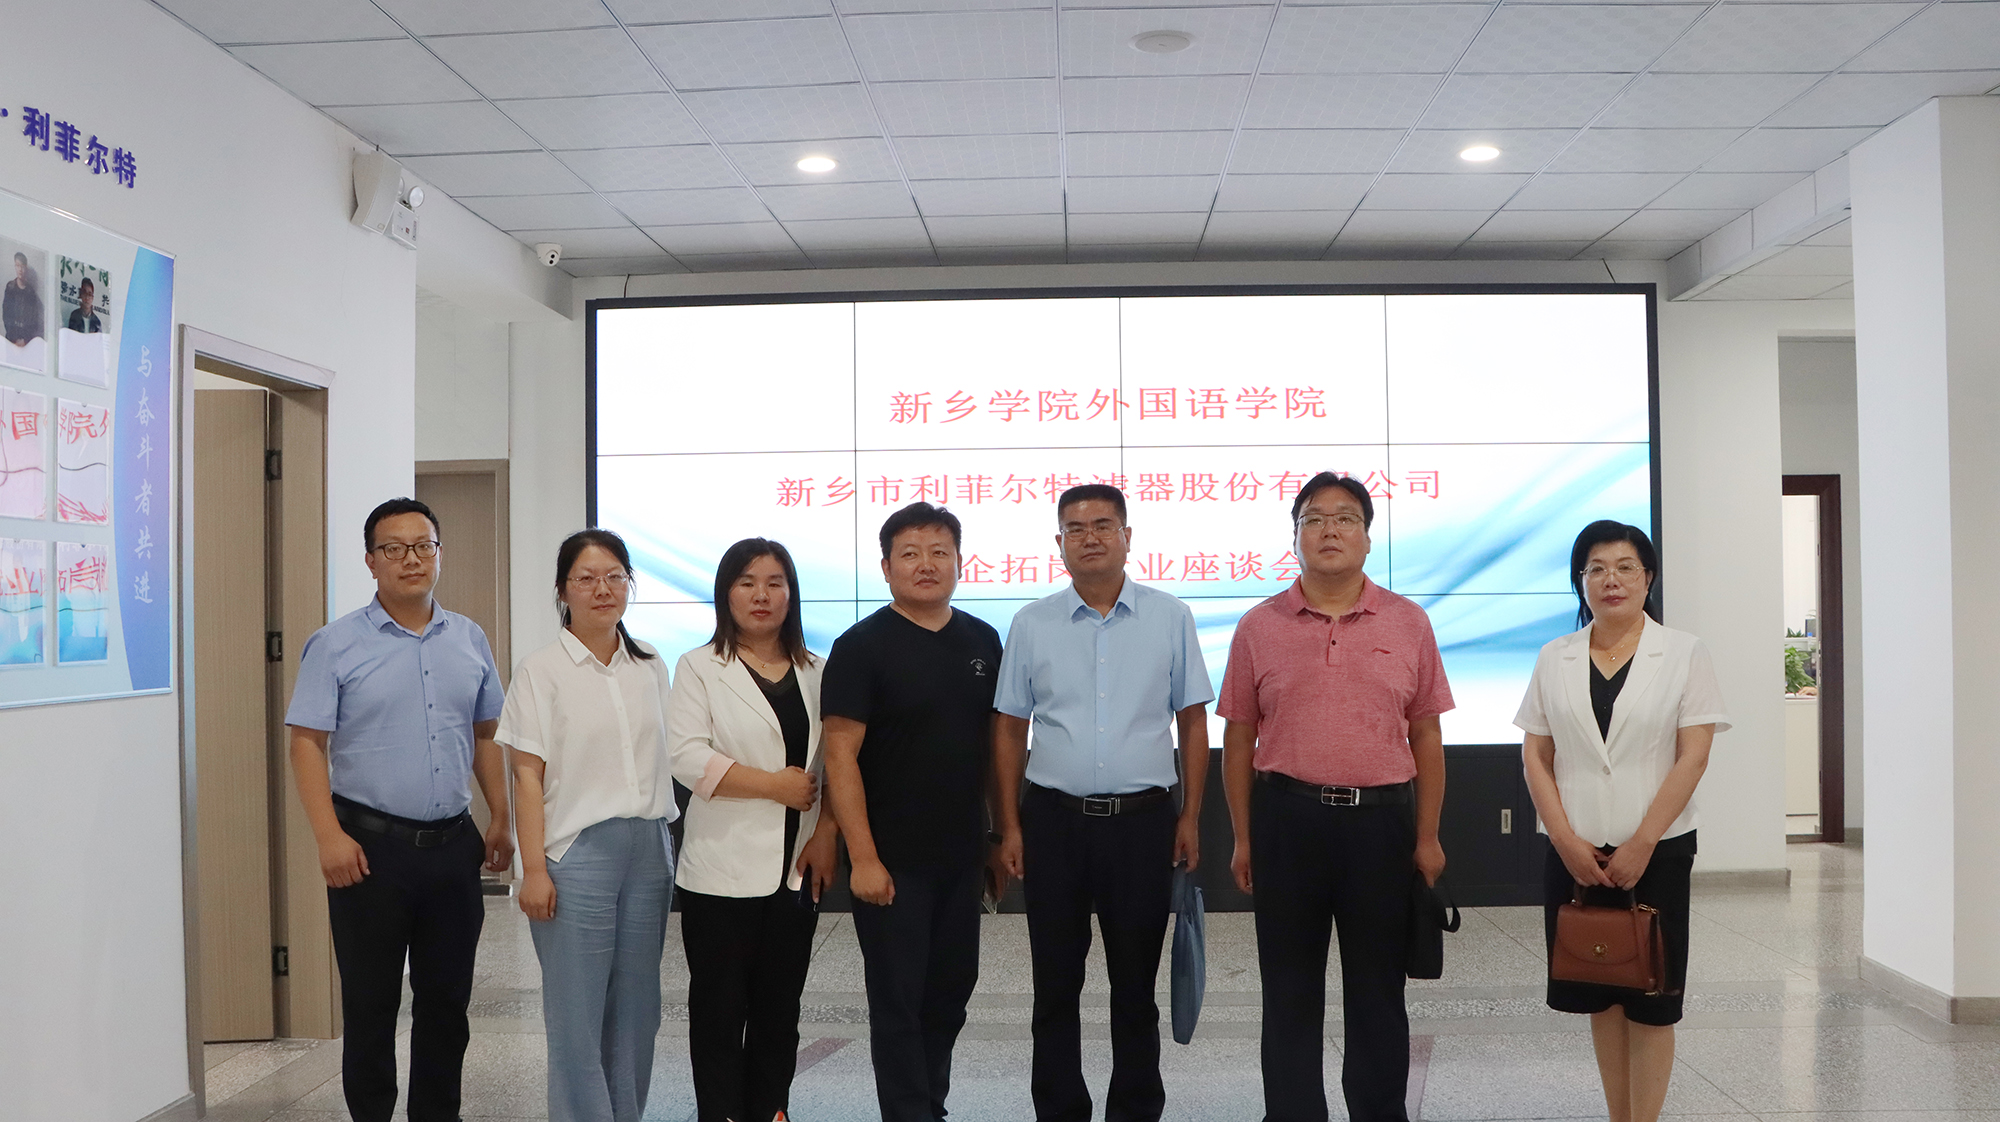 زار قادة كلية Xinxiang شركتنا للتحقيق والتبادل